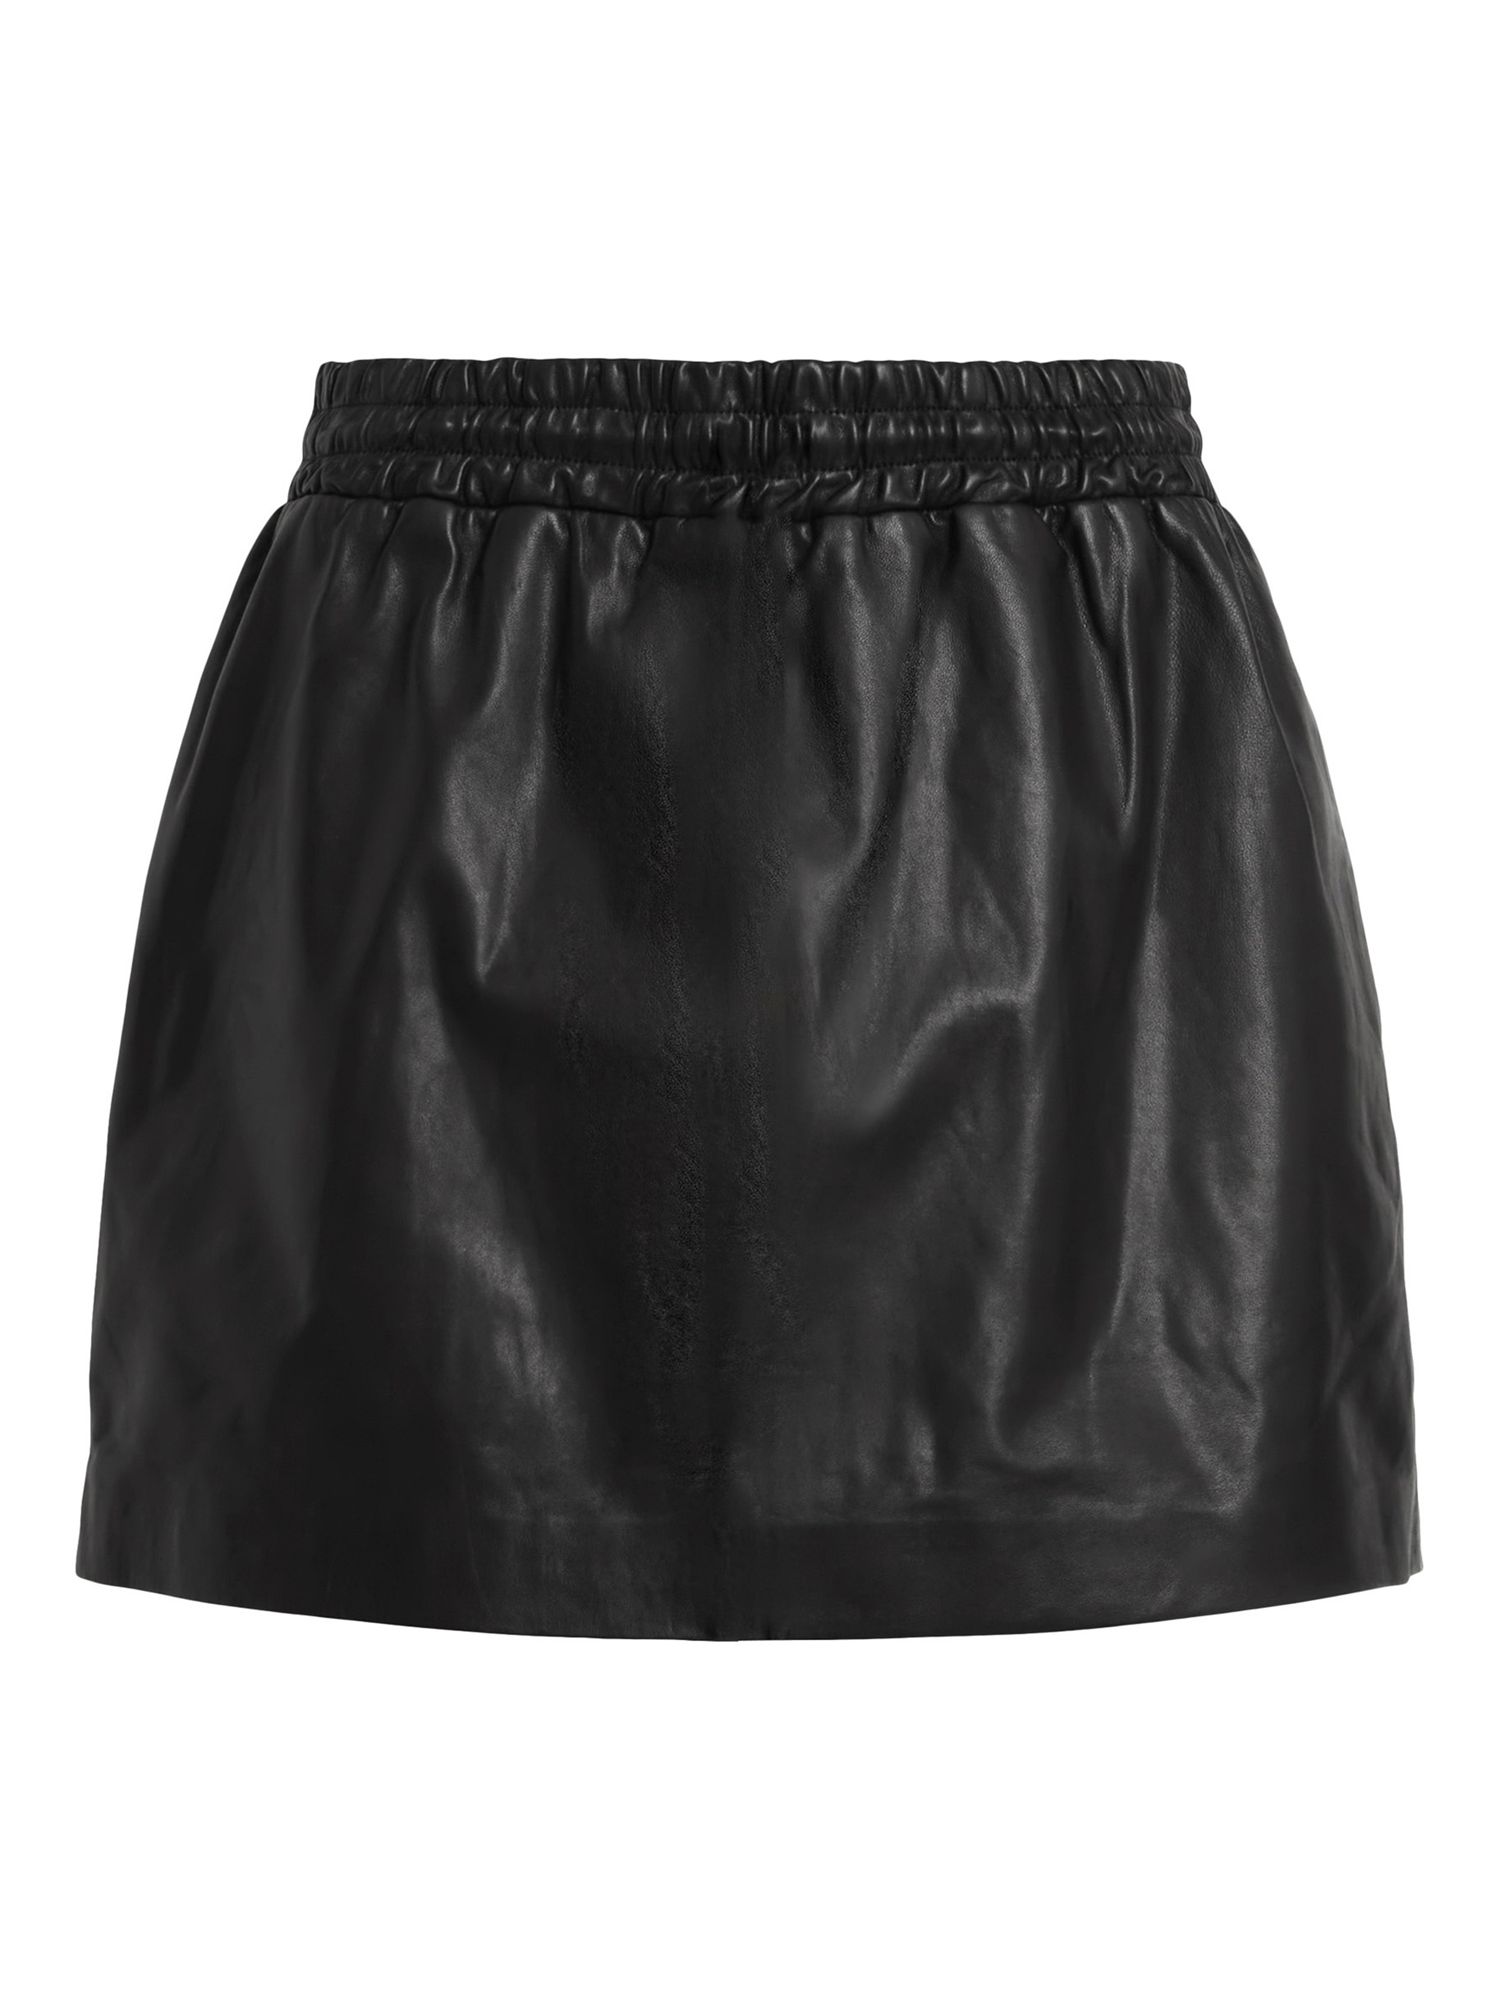 Buy AllSaints Shana Leather Mini Skirt, Black Online at johnlewis.com